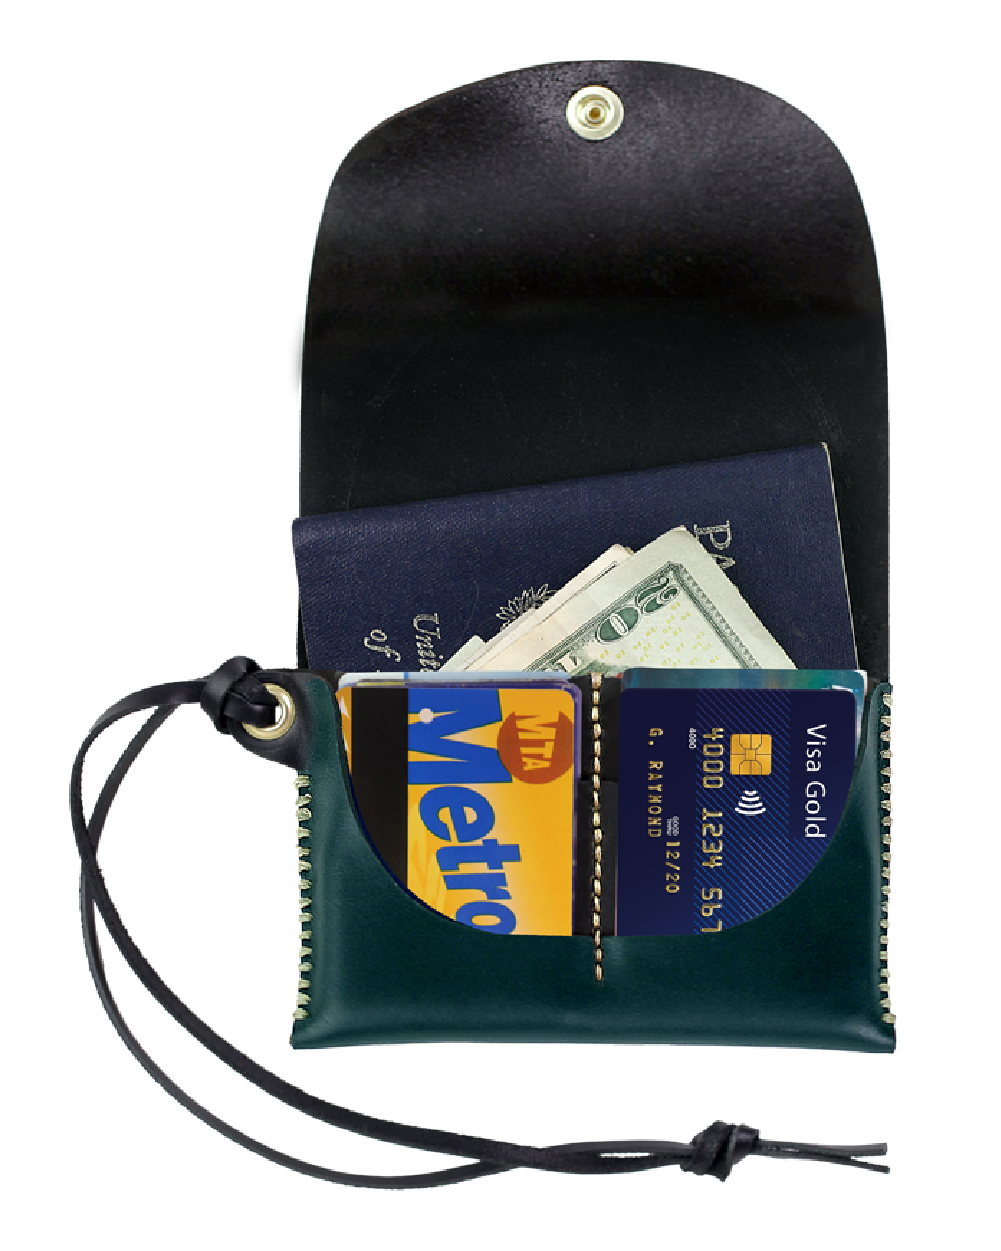 Carbon Passport Wallet x Misc. Goods Co.